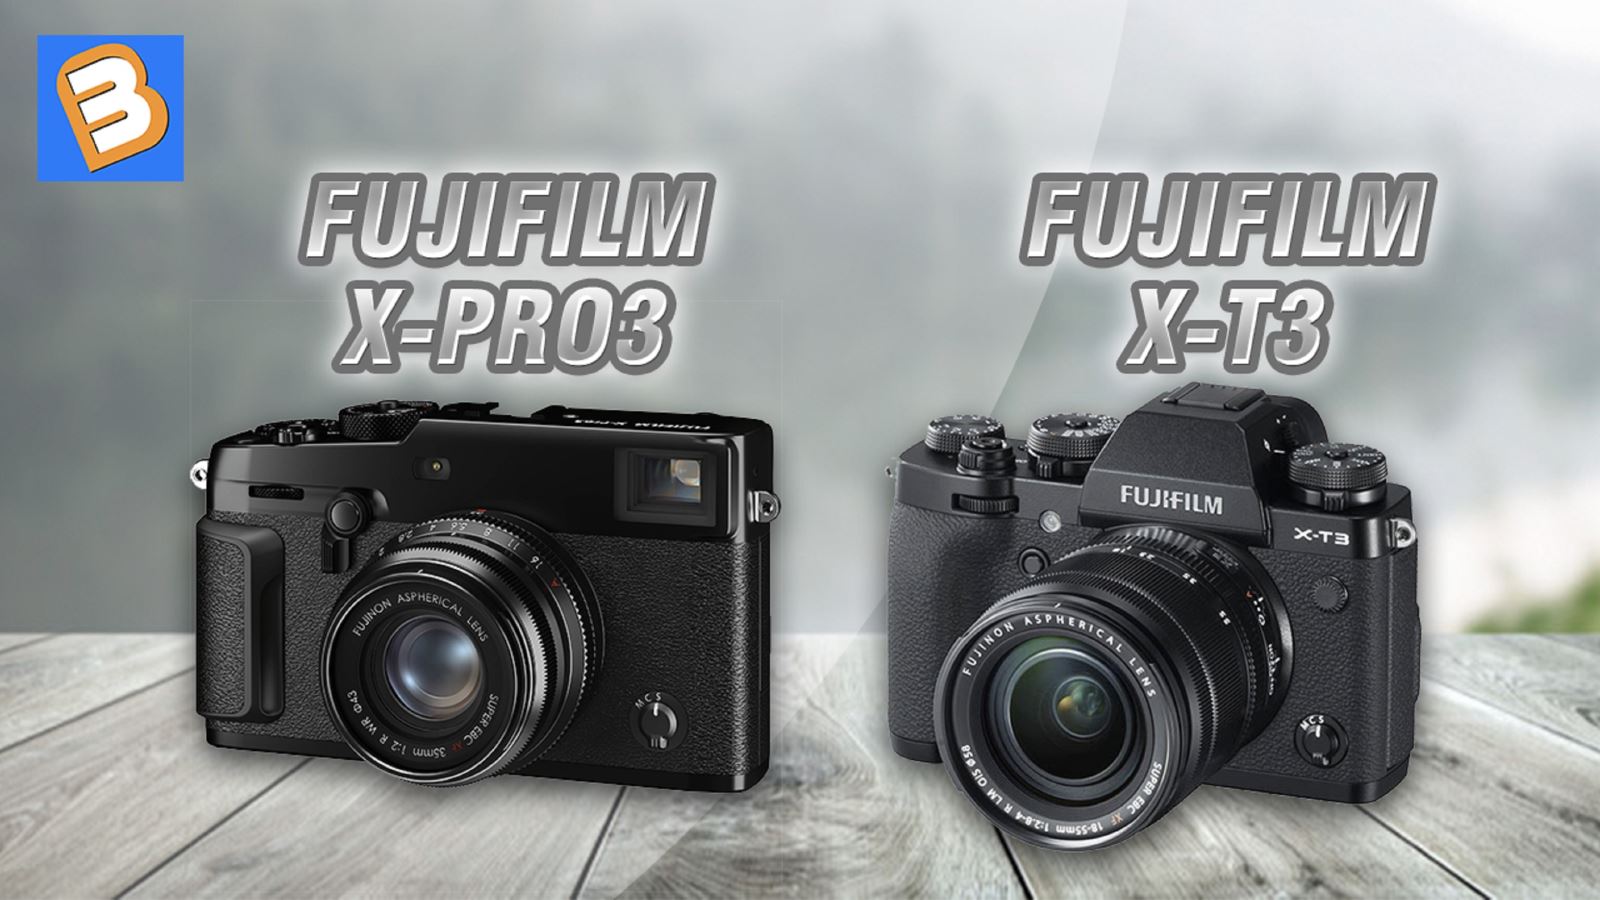 Khám phá những điểm khác biệt giữa Fujifilm X-Pro3 và X-T3